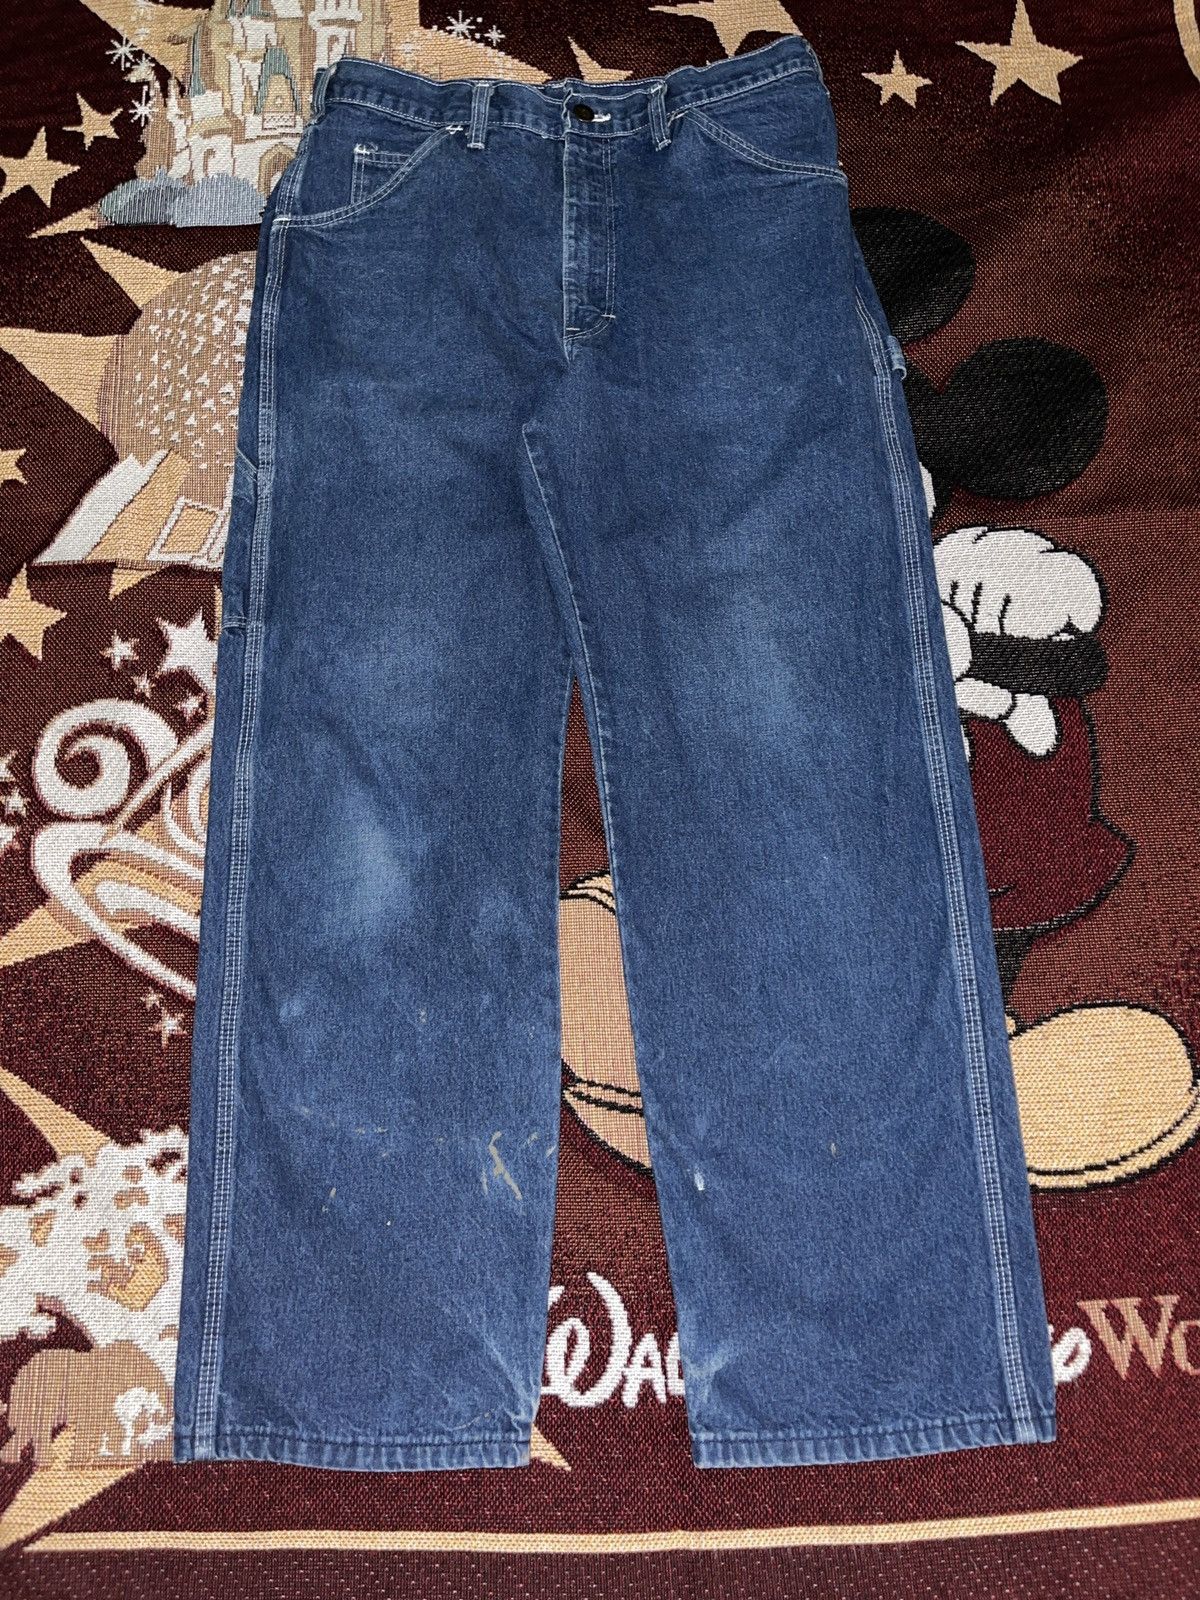 Vintage Vintage 90s Dickies Denim Carpenter Jeans 33x30 Size US 33 - 6 Thumbnail